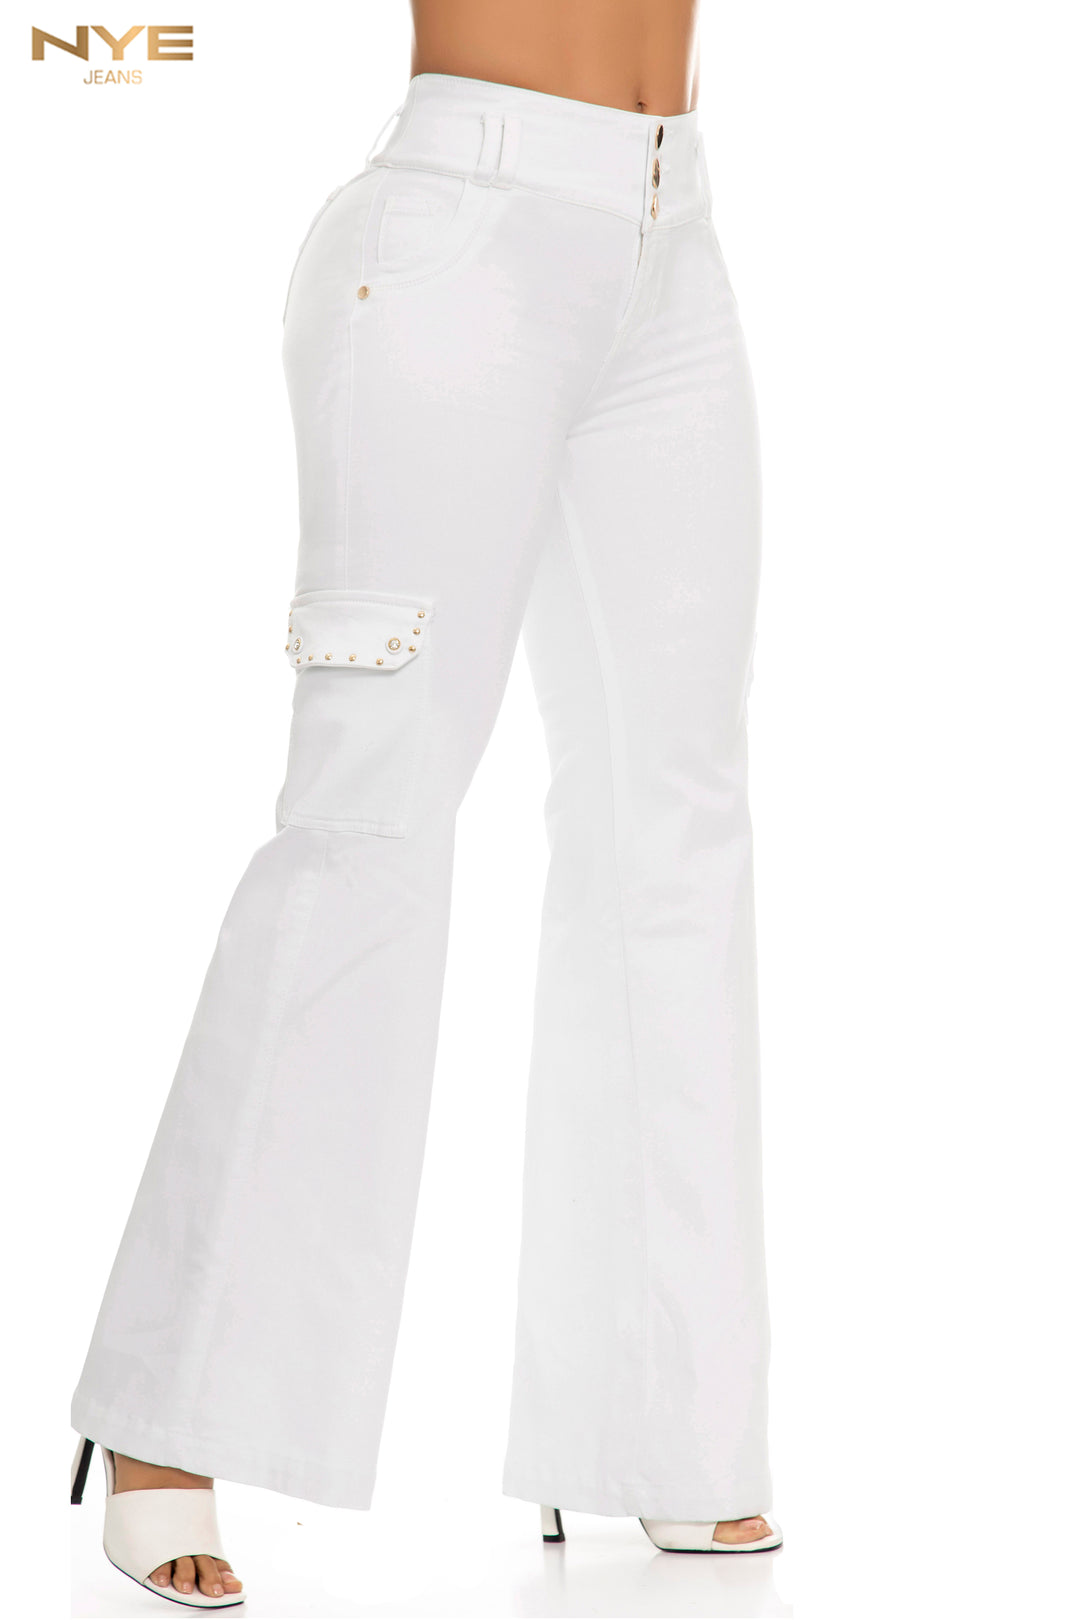 Estos jeans Vaquero Bota Ancha Ref 63926 son la mezcla perfecta para un look moderno y casual. Utilizan un tejido ultra elástico para crear una estructura con cintura alta y una caída suave. Disponen de bolsillos funcionales añadiendo un toque moderno a un look clásico.